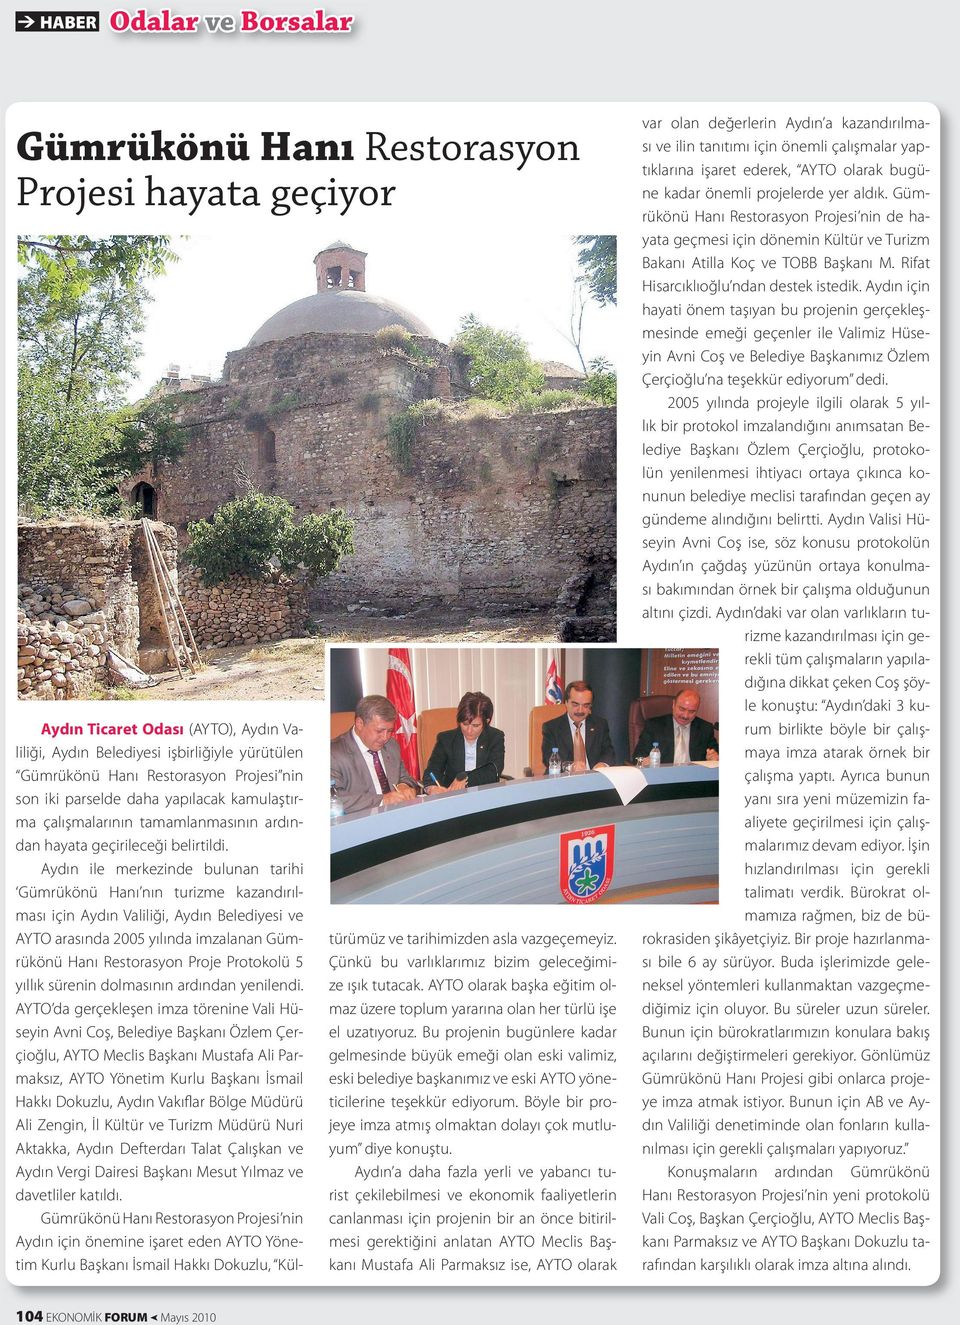 Aydın ile merkezinde bulunan tarihi Gümrükönü Hanı nın turizme kazandırılması için Aydın Valiliği, Aydın Belediyesi ve AYTO arasında 2005 yılında imzalanan Gümrükönü Hanı Restorasyon Proje Protokolü